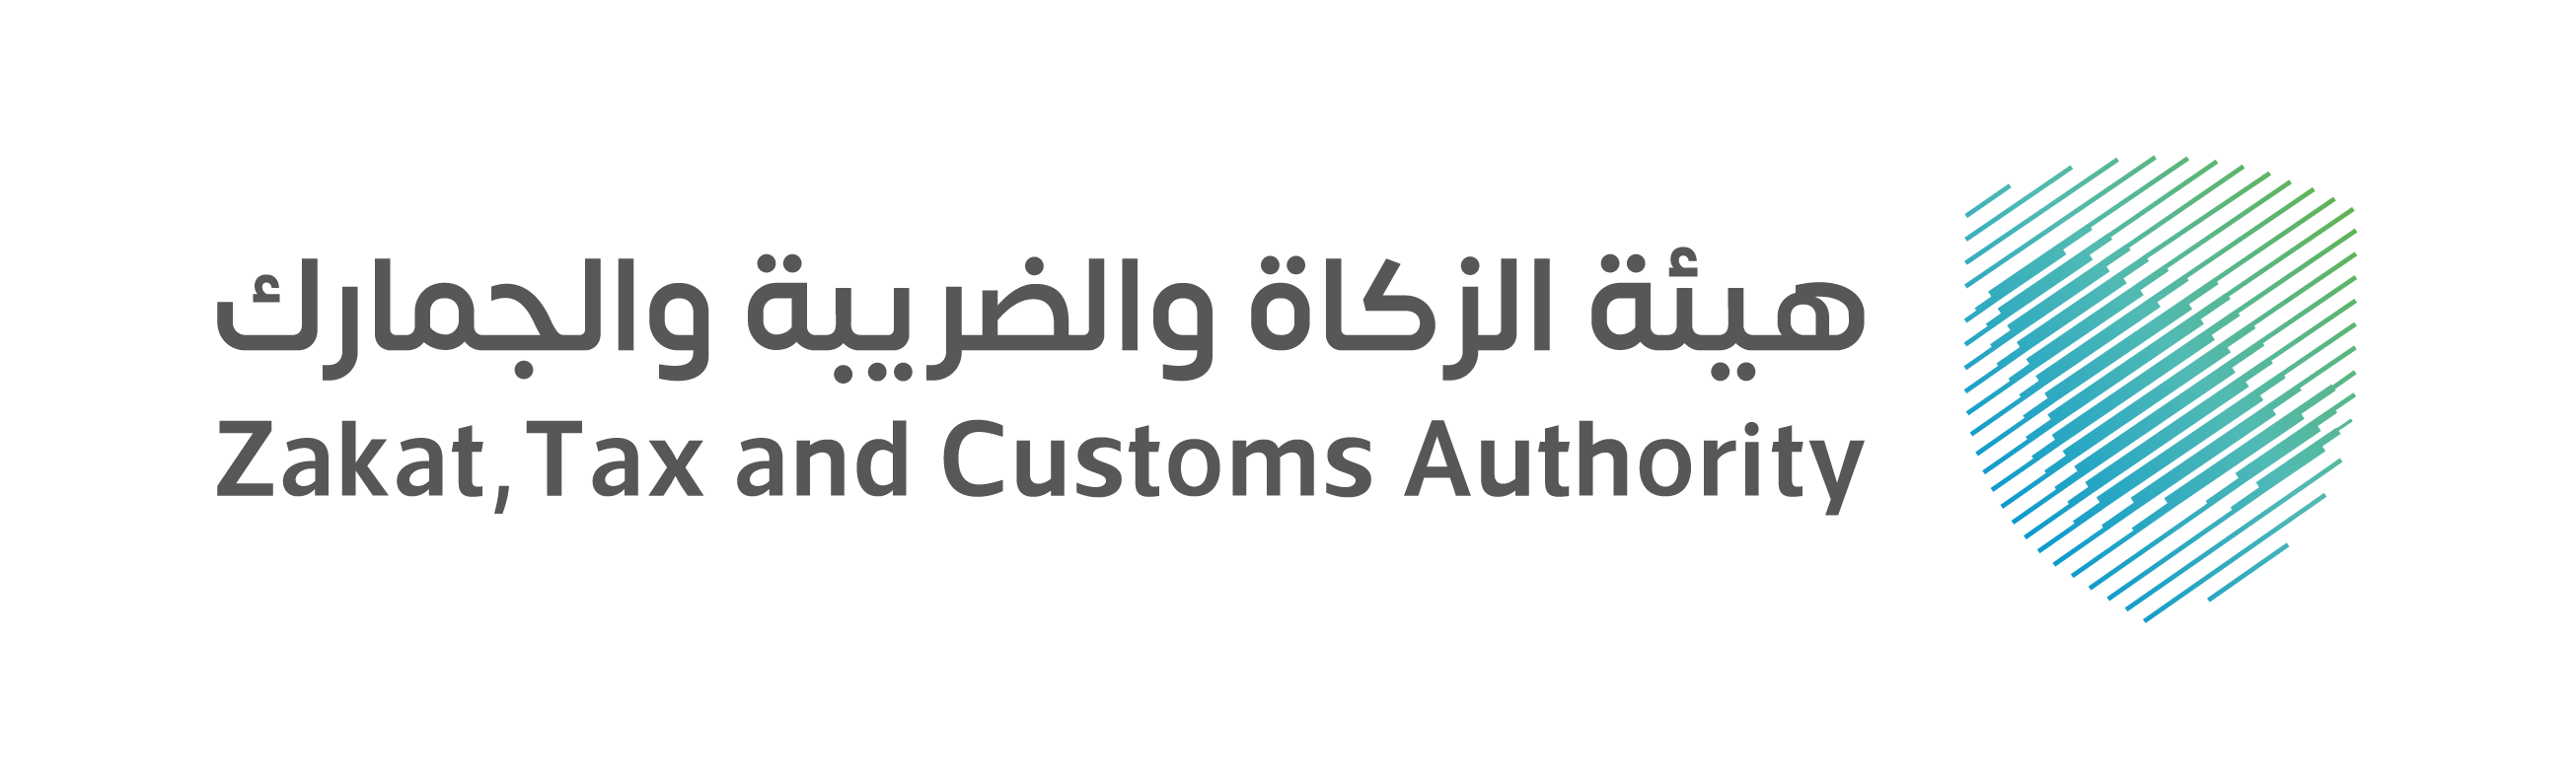 Saudi Zakat, Tax and Customs Authority 